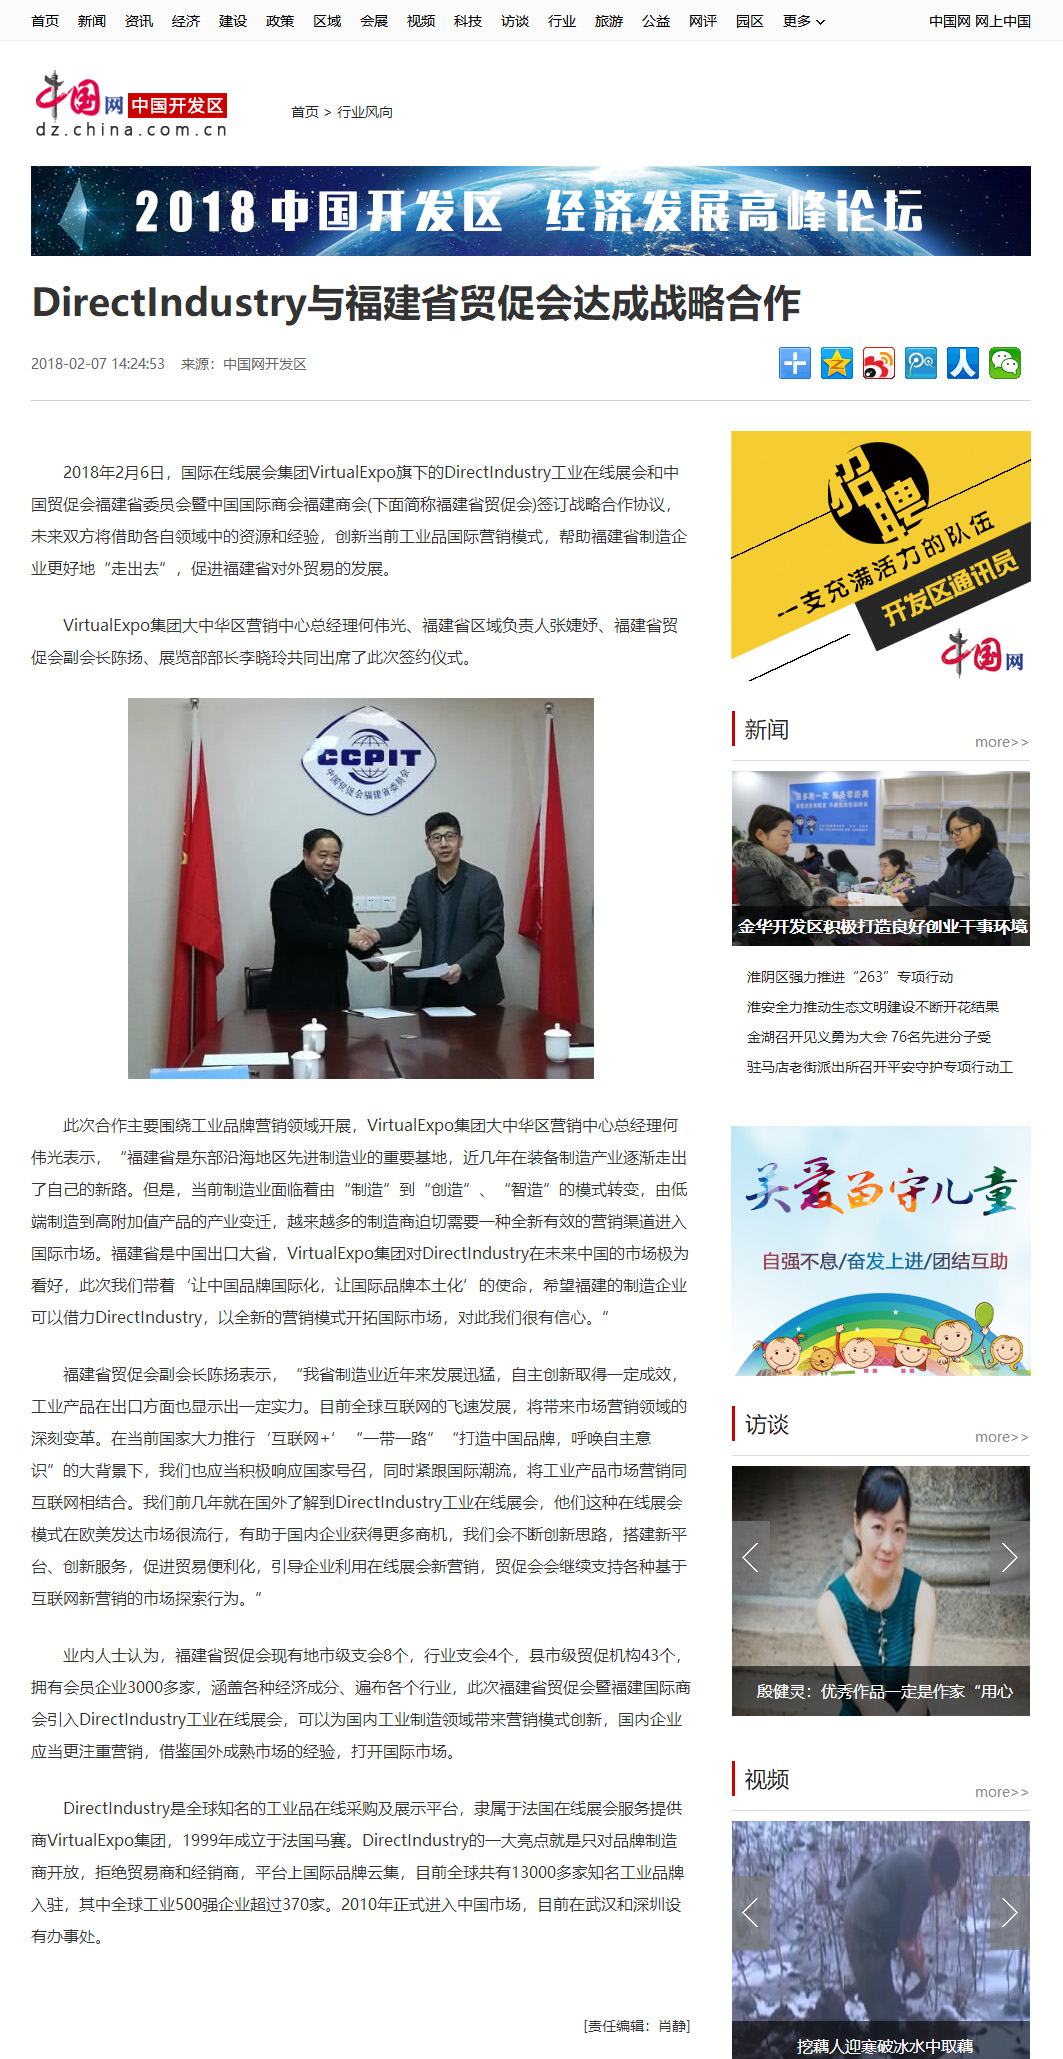 中国网关于”DirectIndustry与福建省贸促会达成战略合作“的报道